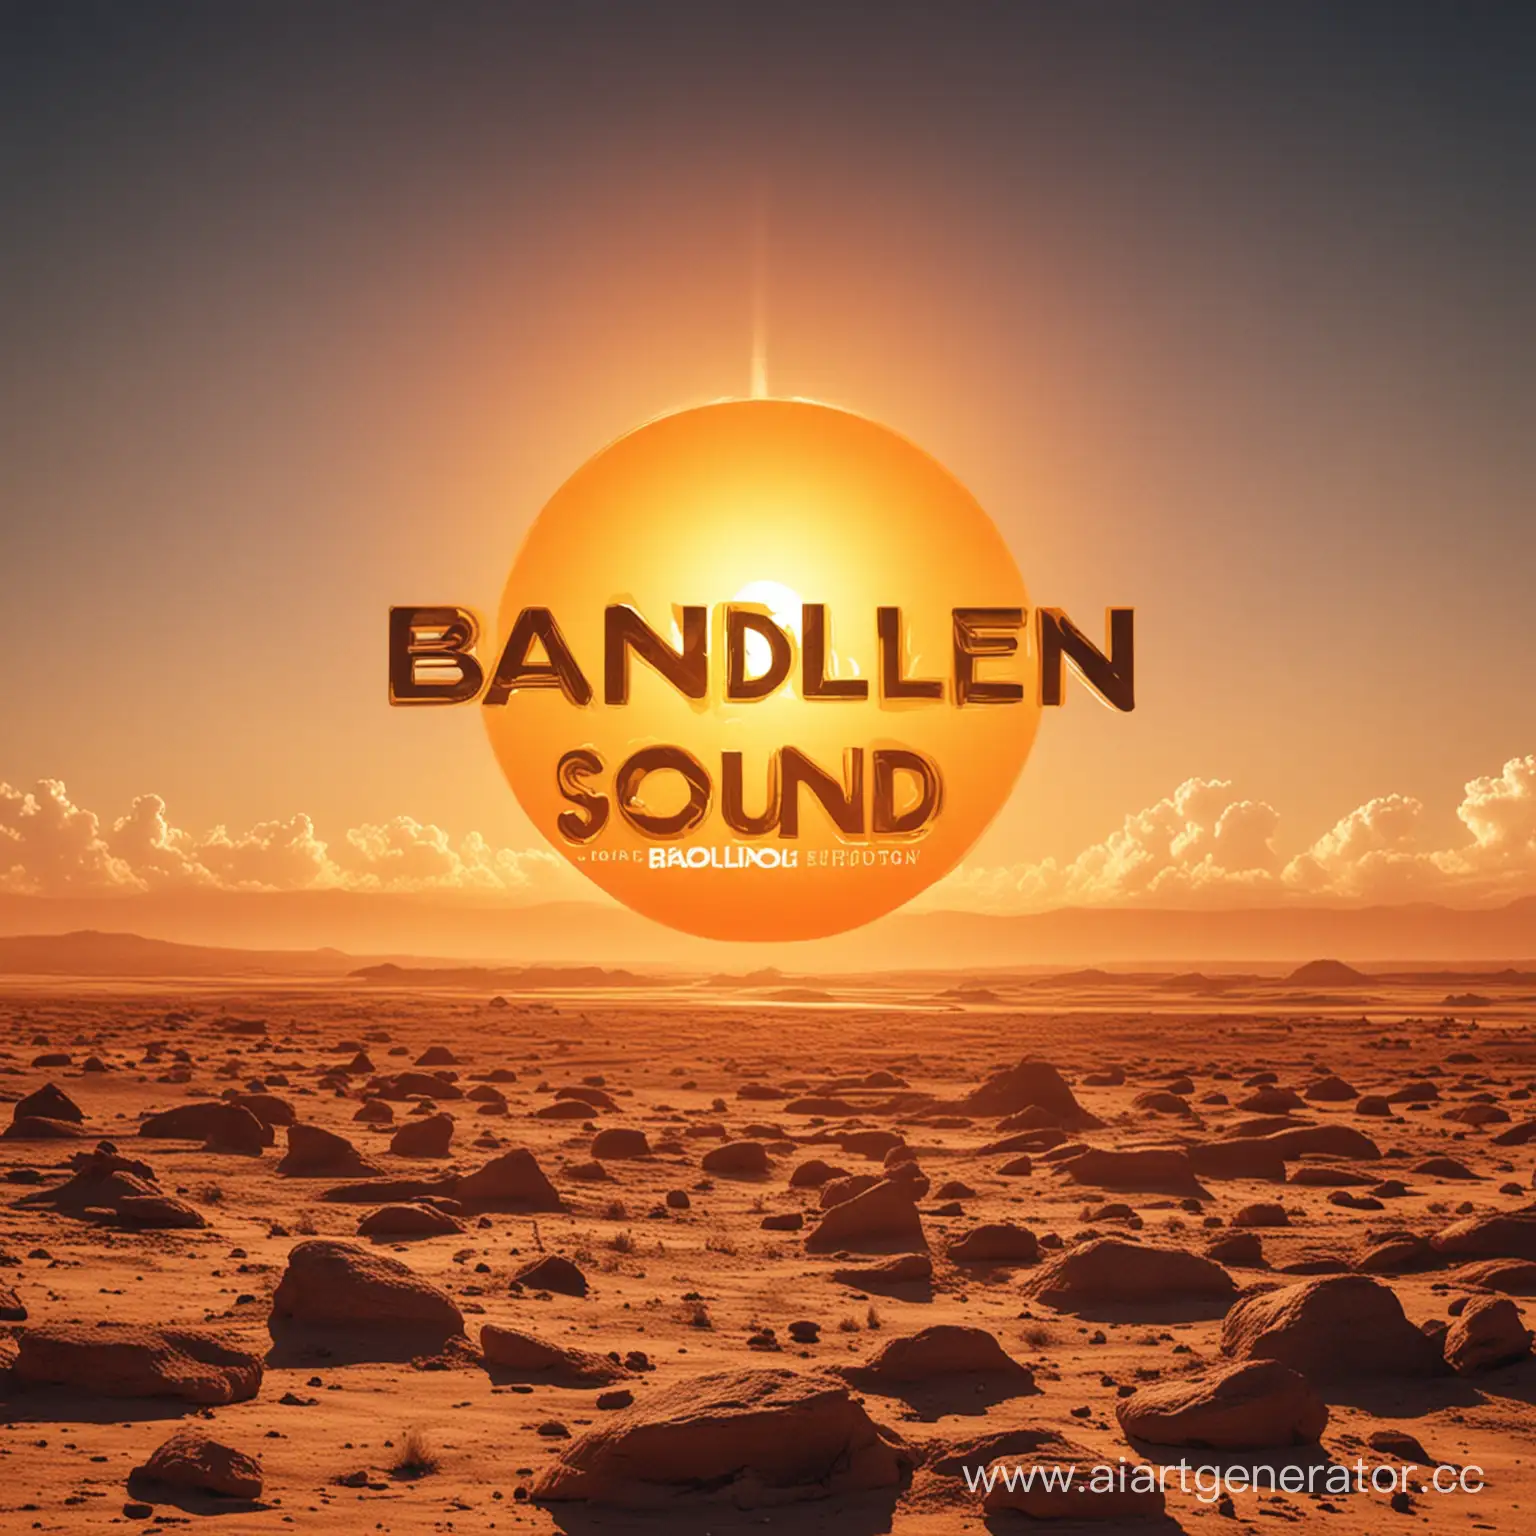 Обложка для трека в стиле EDM с оранжевым солнцем и надписью "Bandilen Sound"